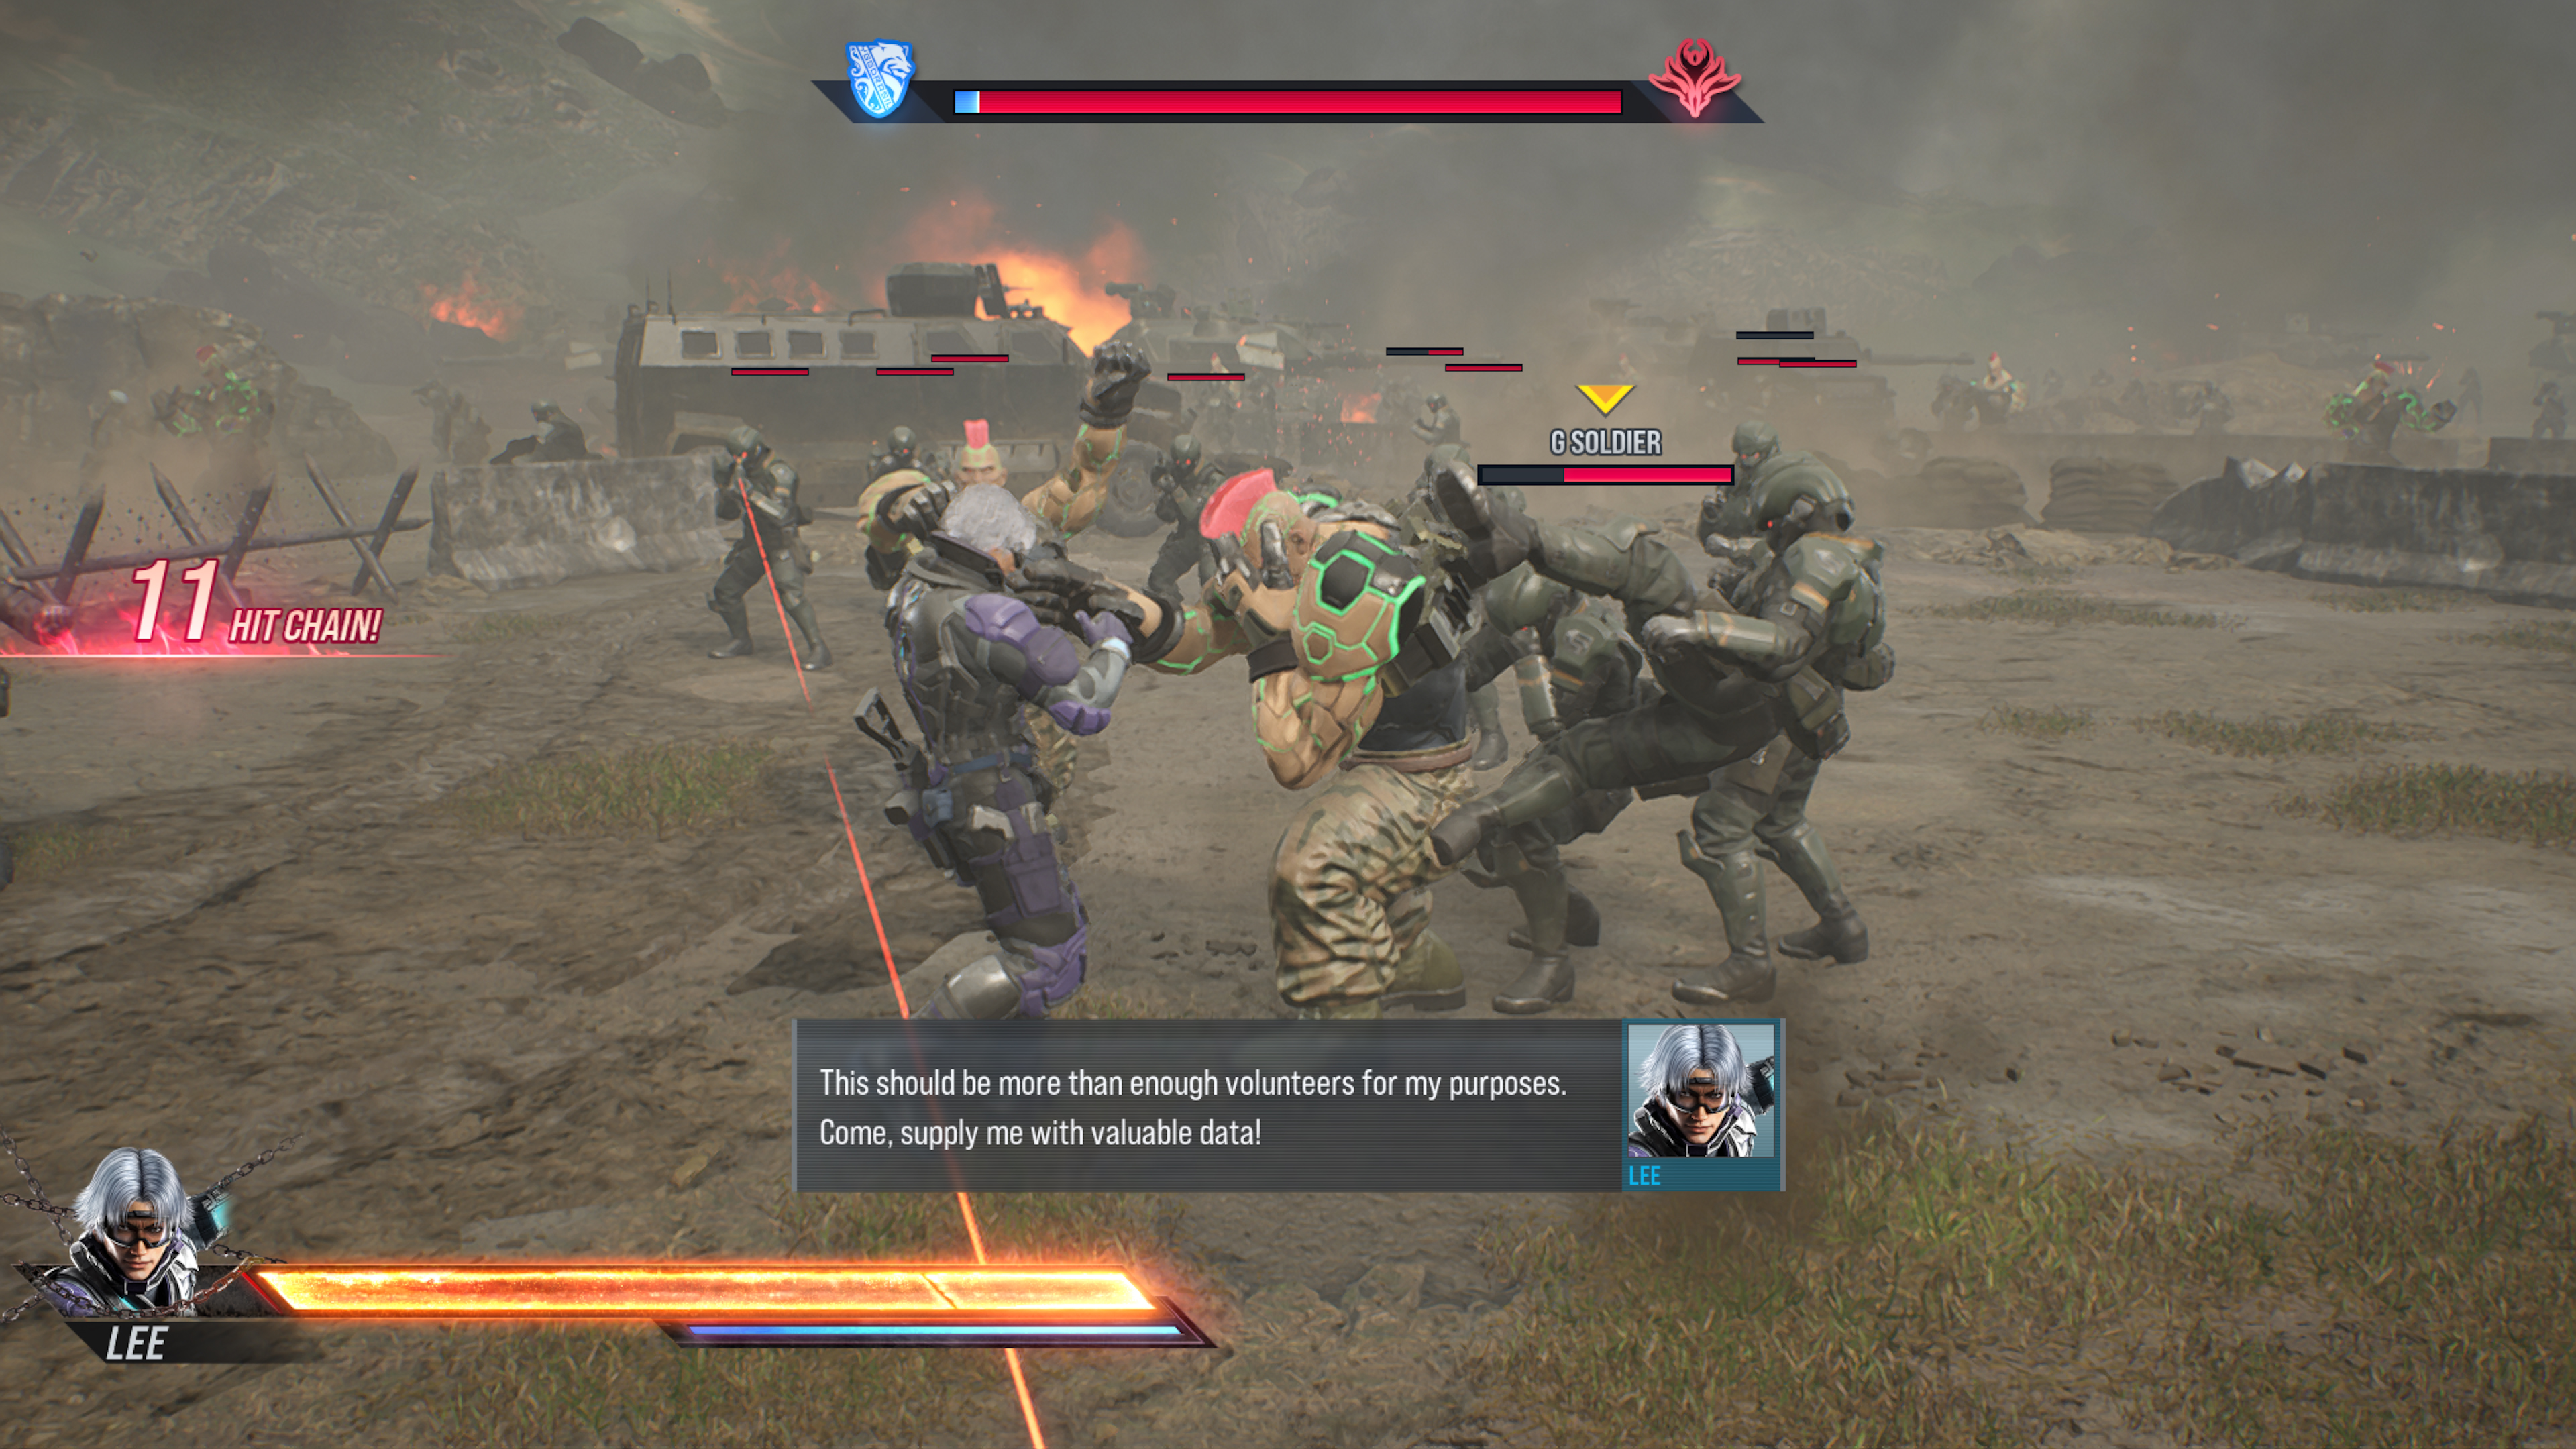 Lee fighting G-Force armies in Tekken 8 story mode.